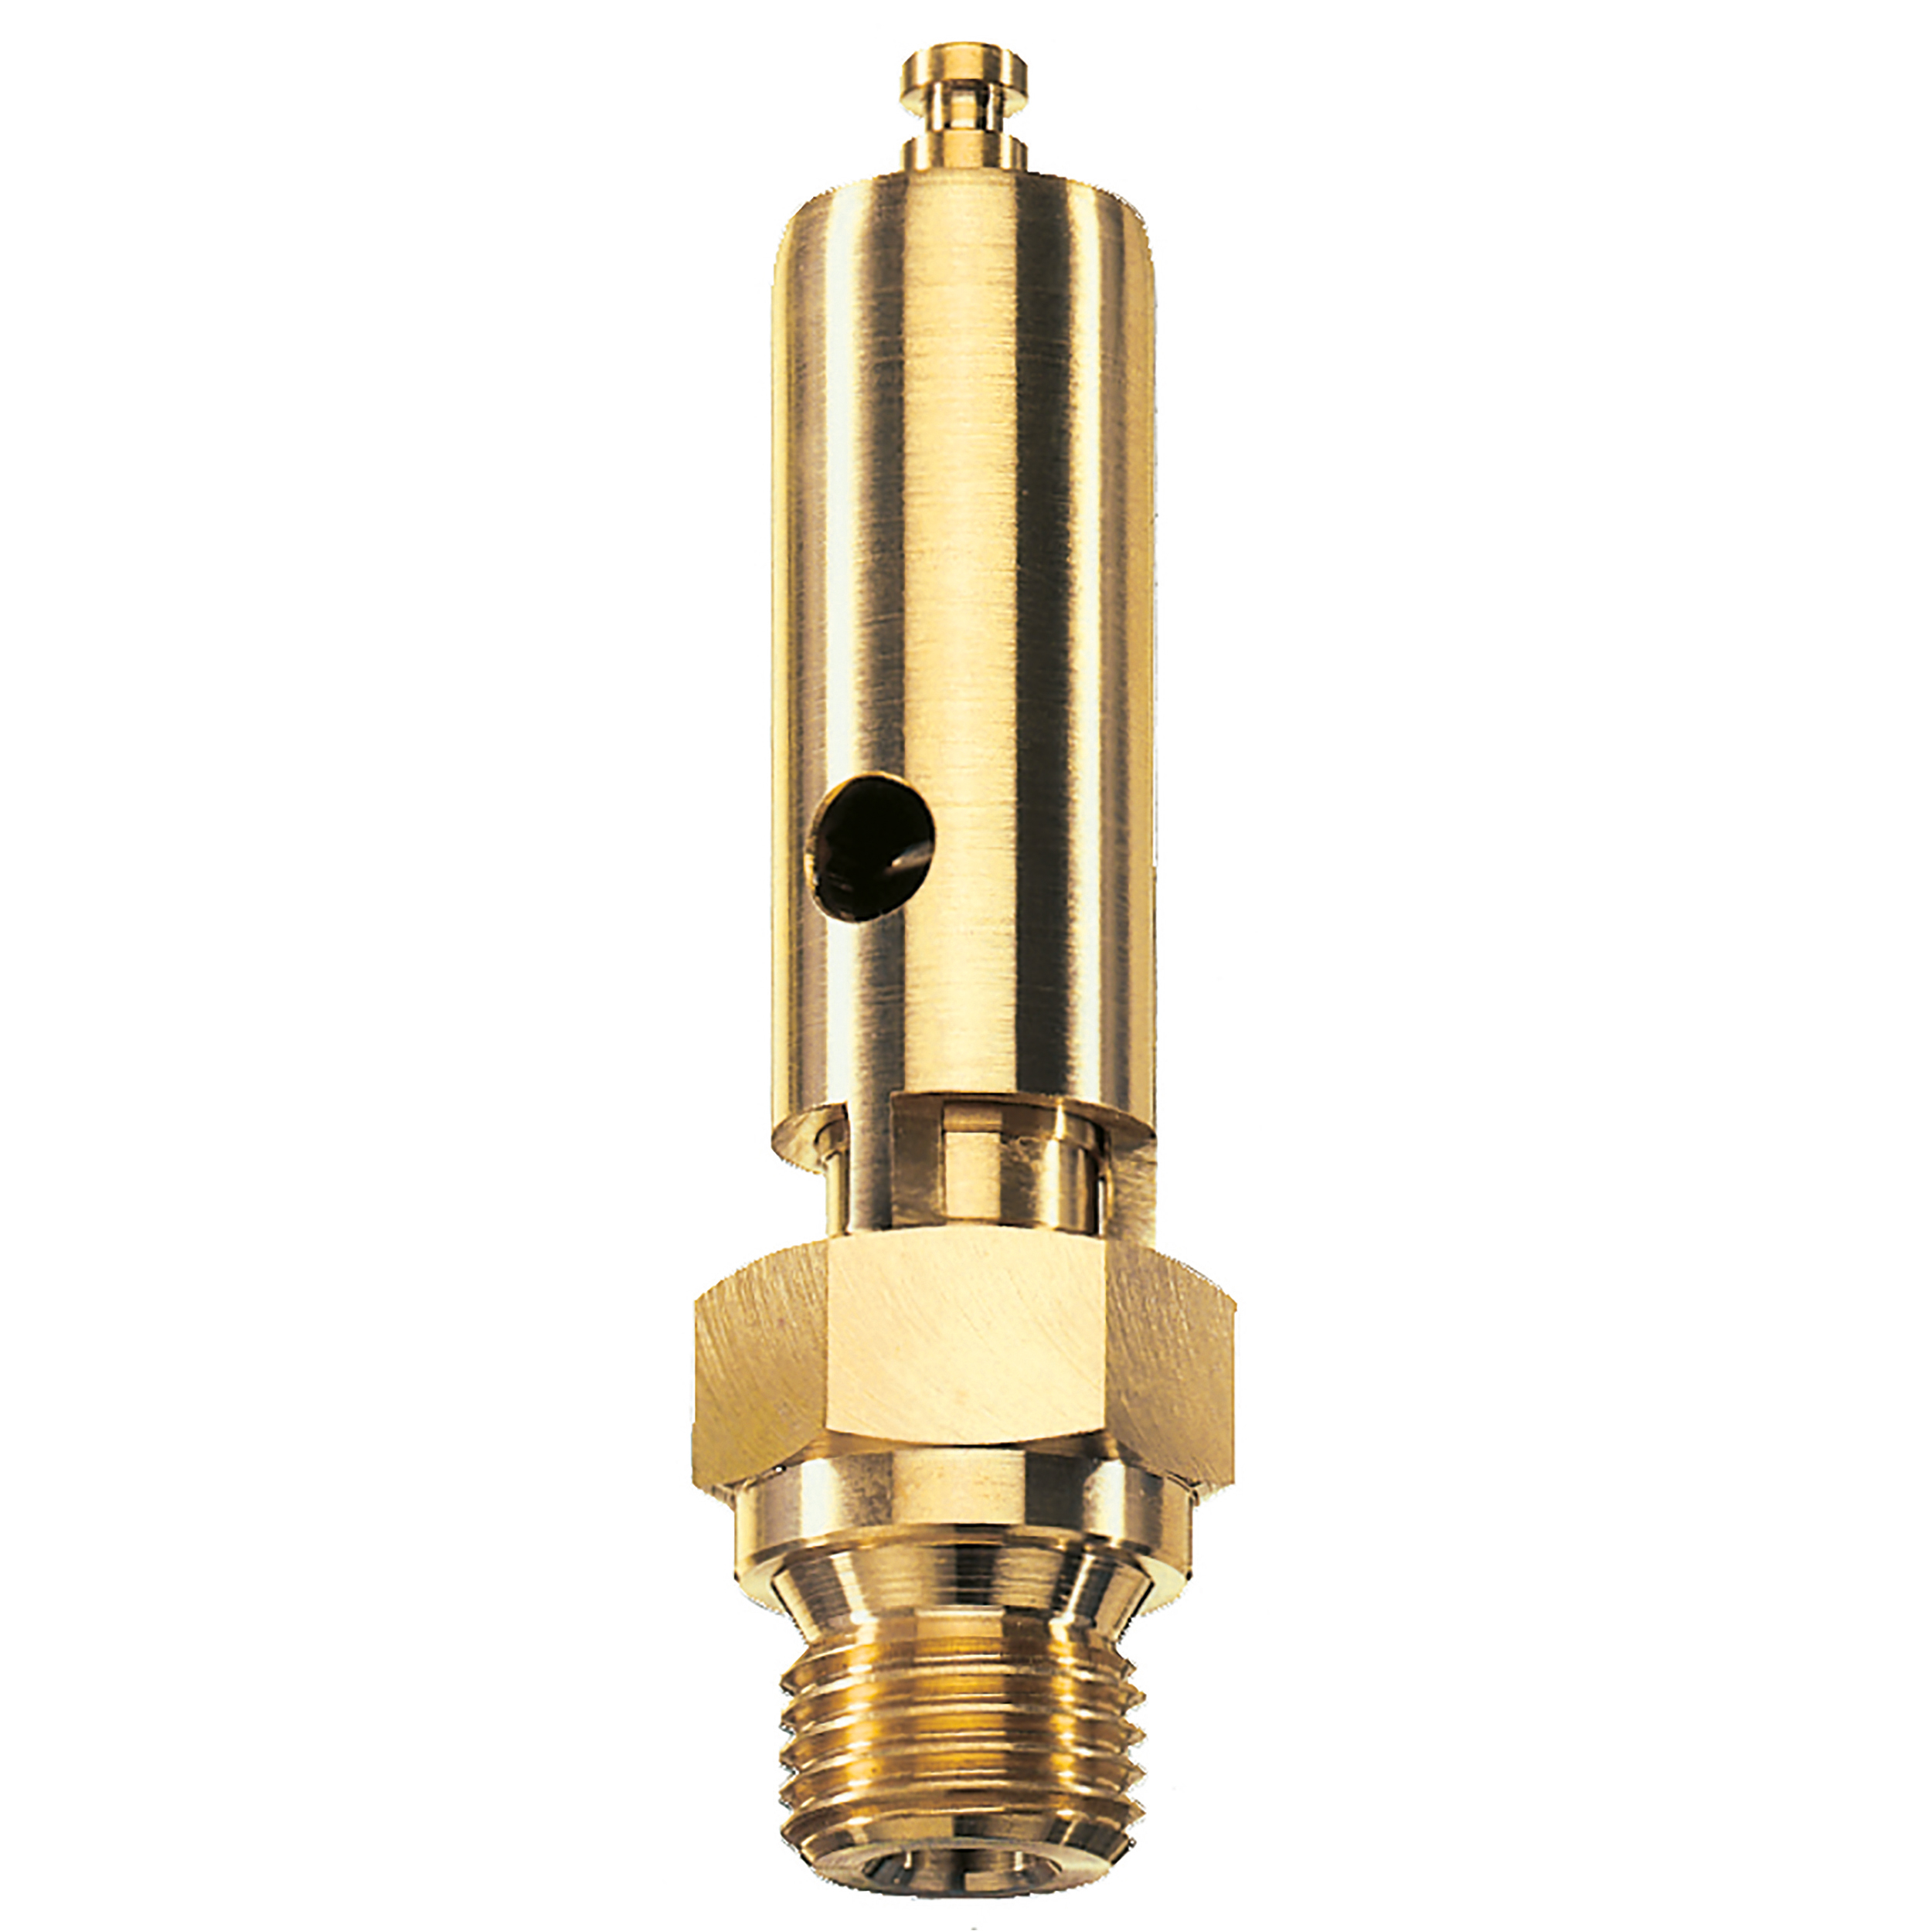 Savety valve component tested DN 6, G¼, L: 60 mm, seal: FKM, set pressure: 15.1 bar (219,0 psi), TÜV approval